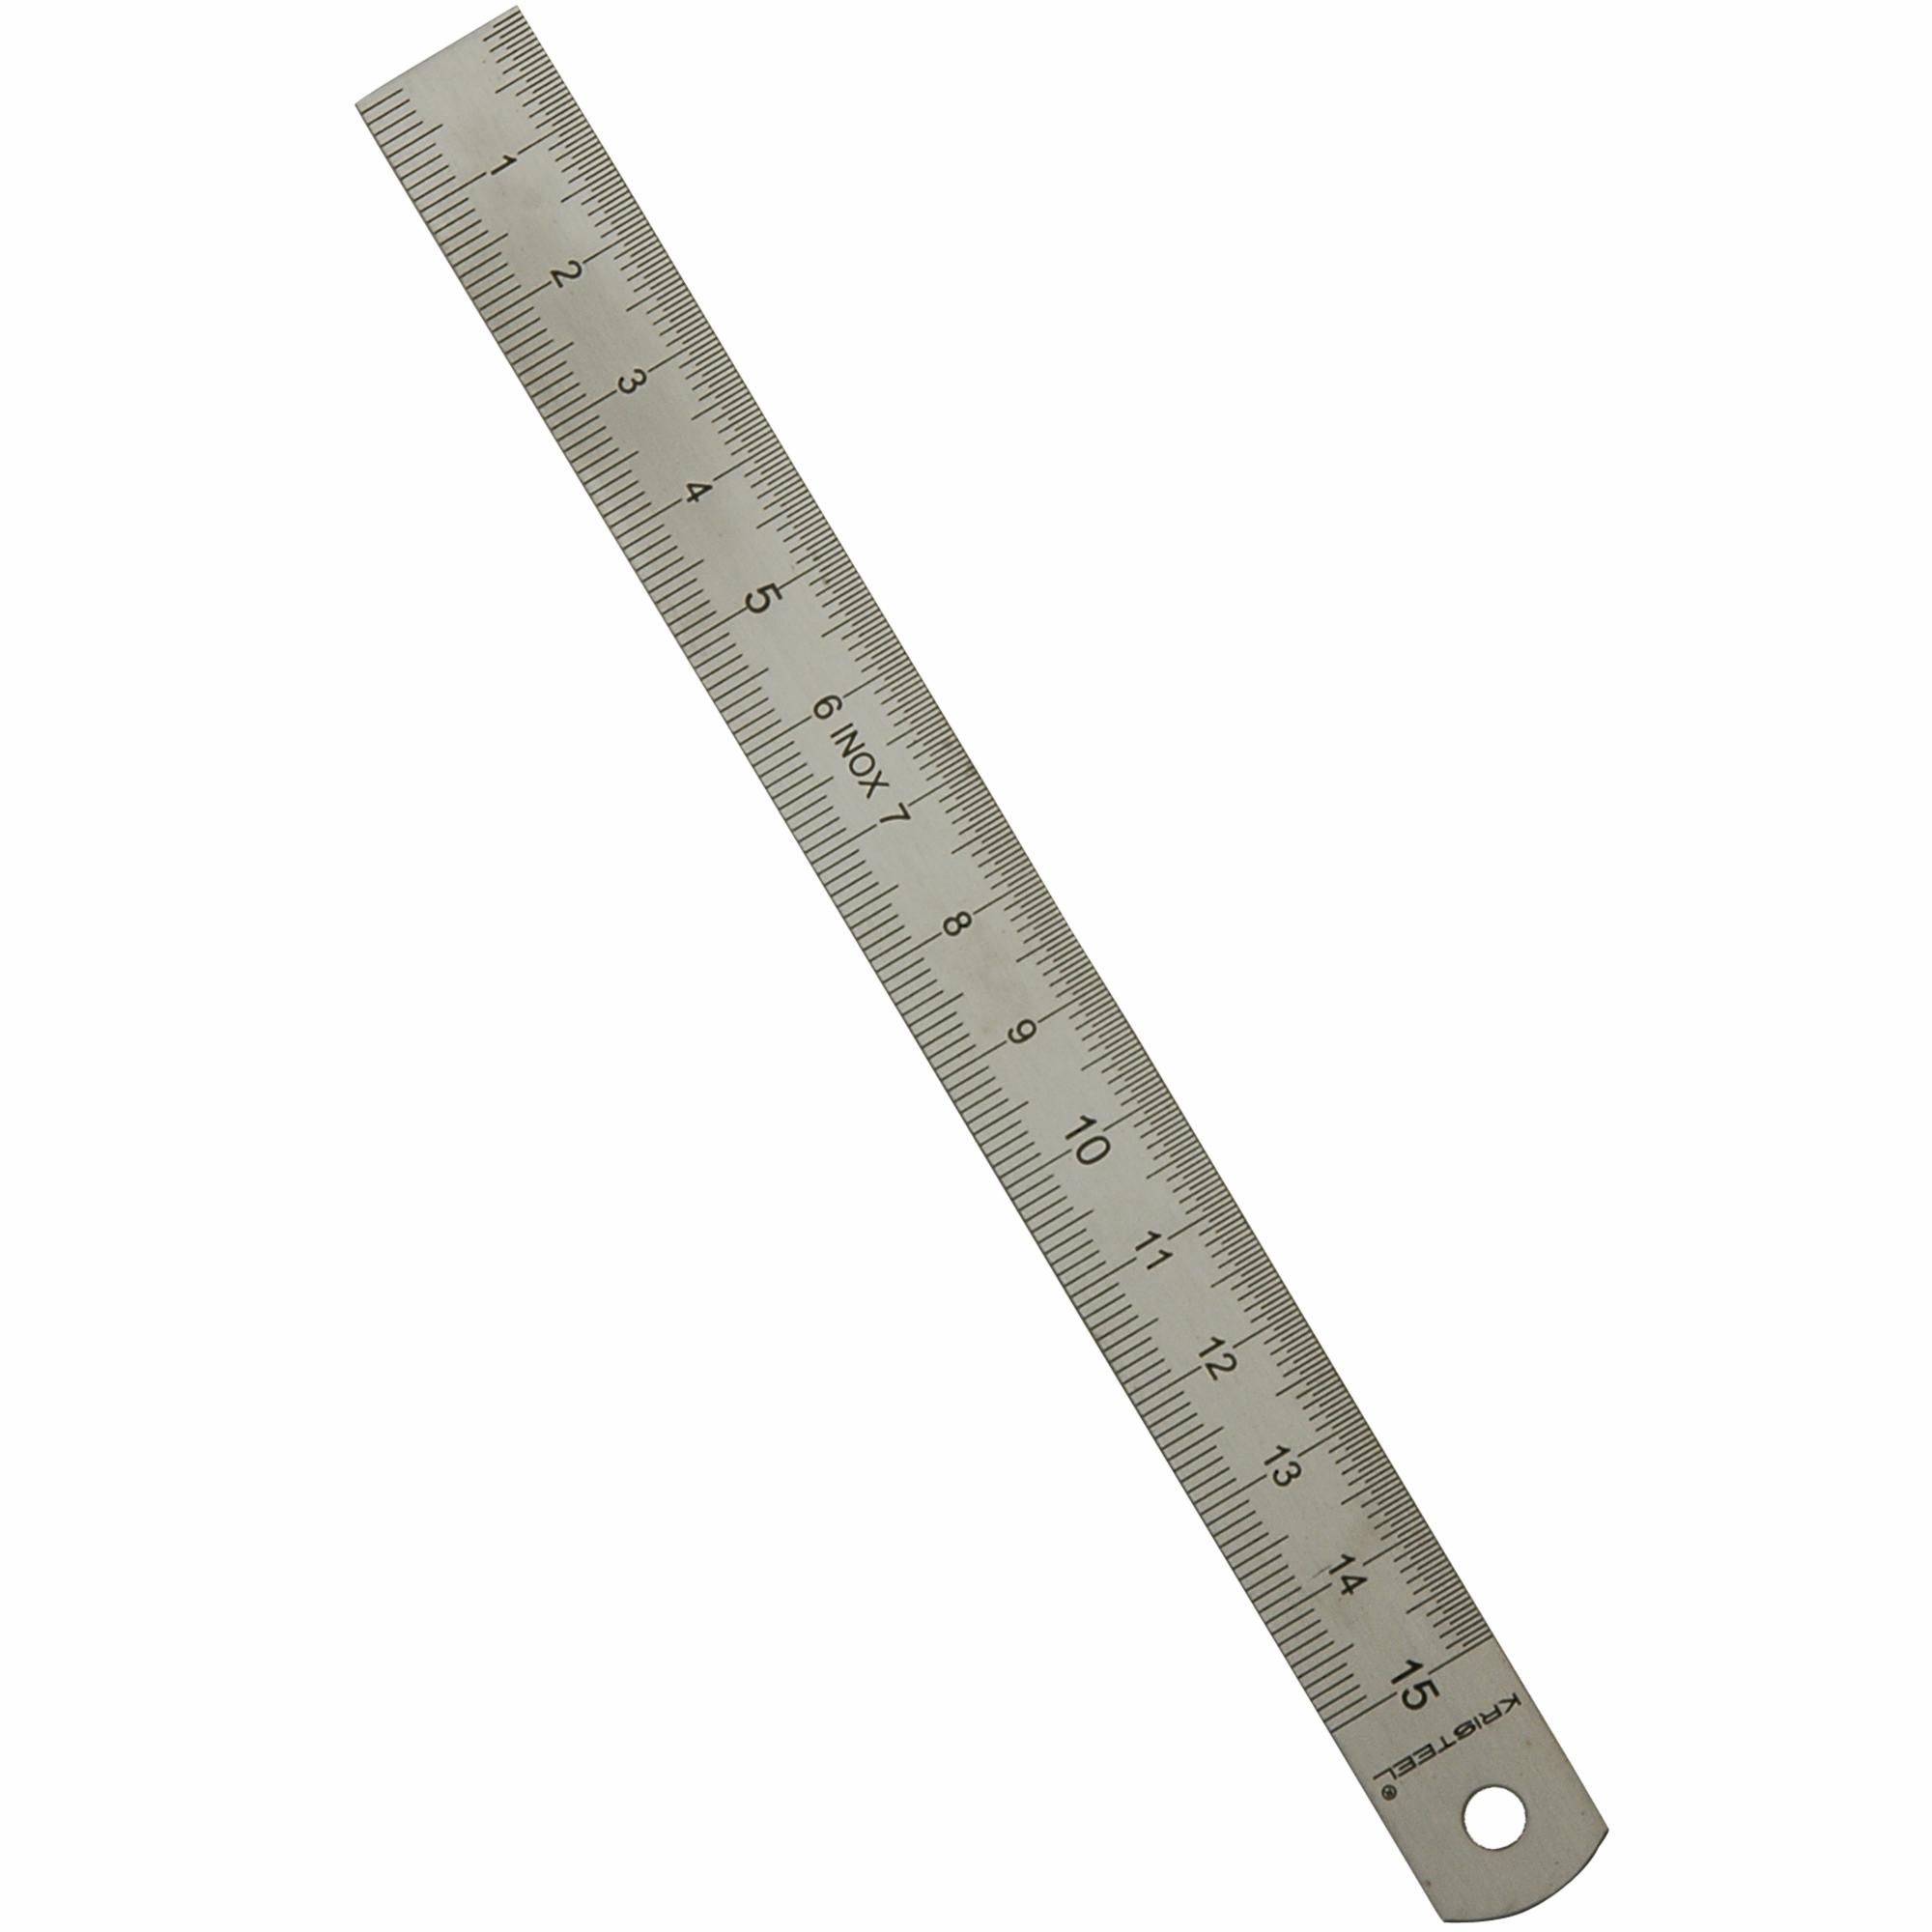 150 mm Ruler